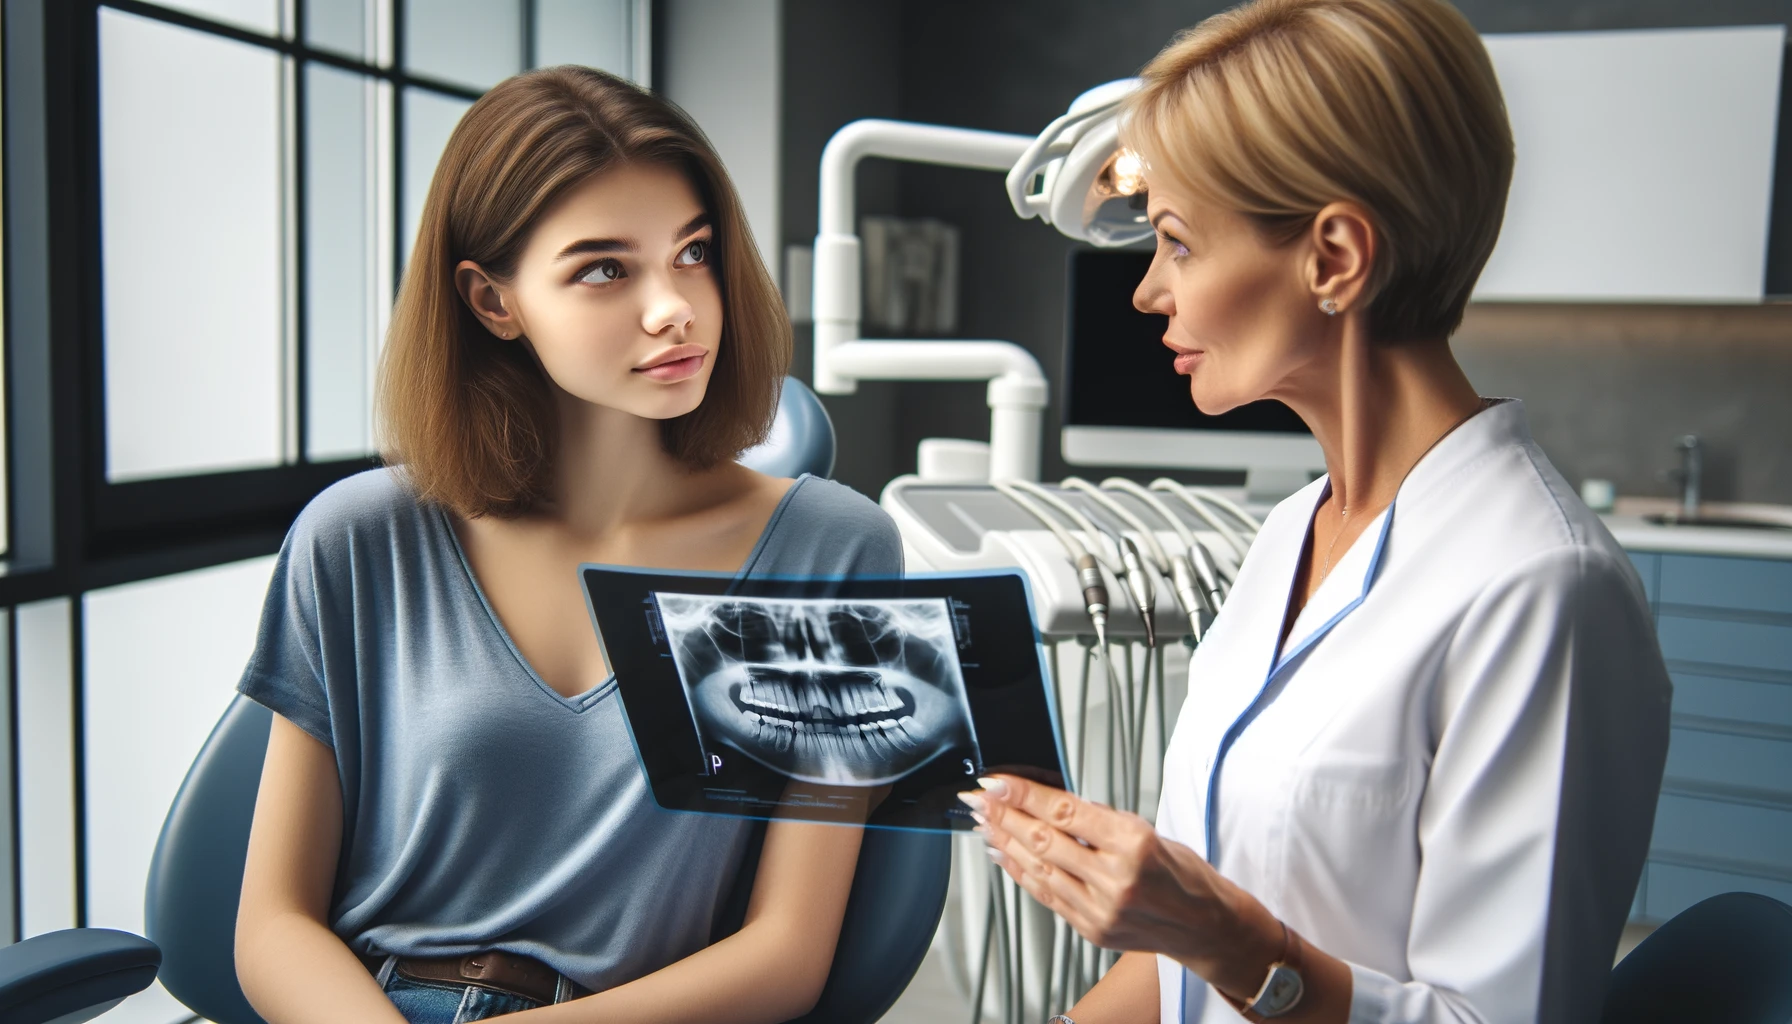 Tannlege forklarer røntgen til ung pasient før en tannuttrekning.